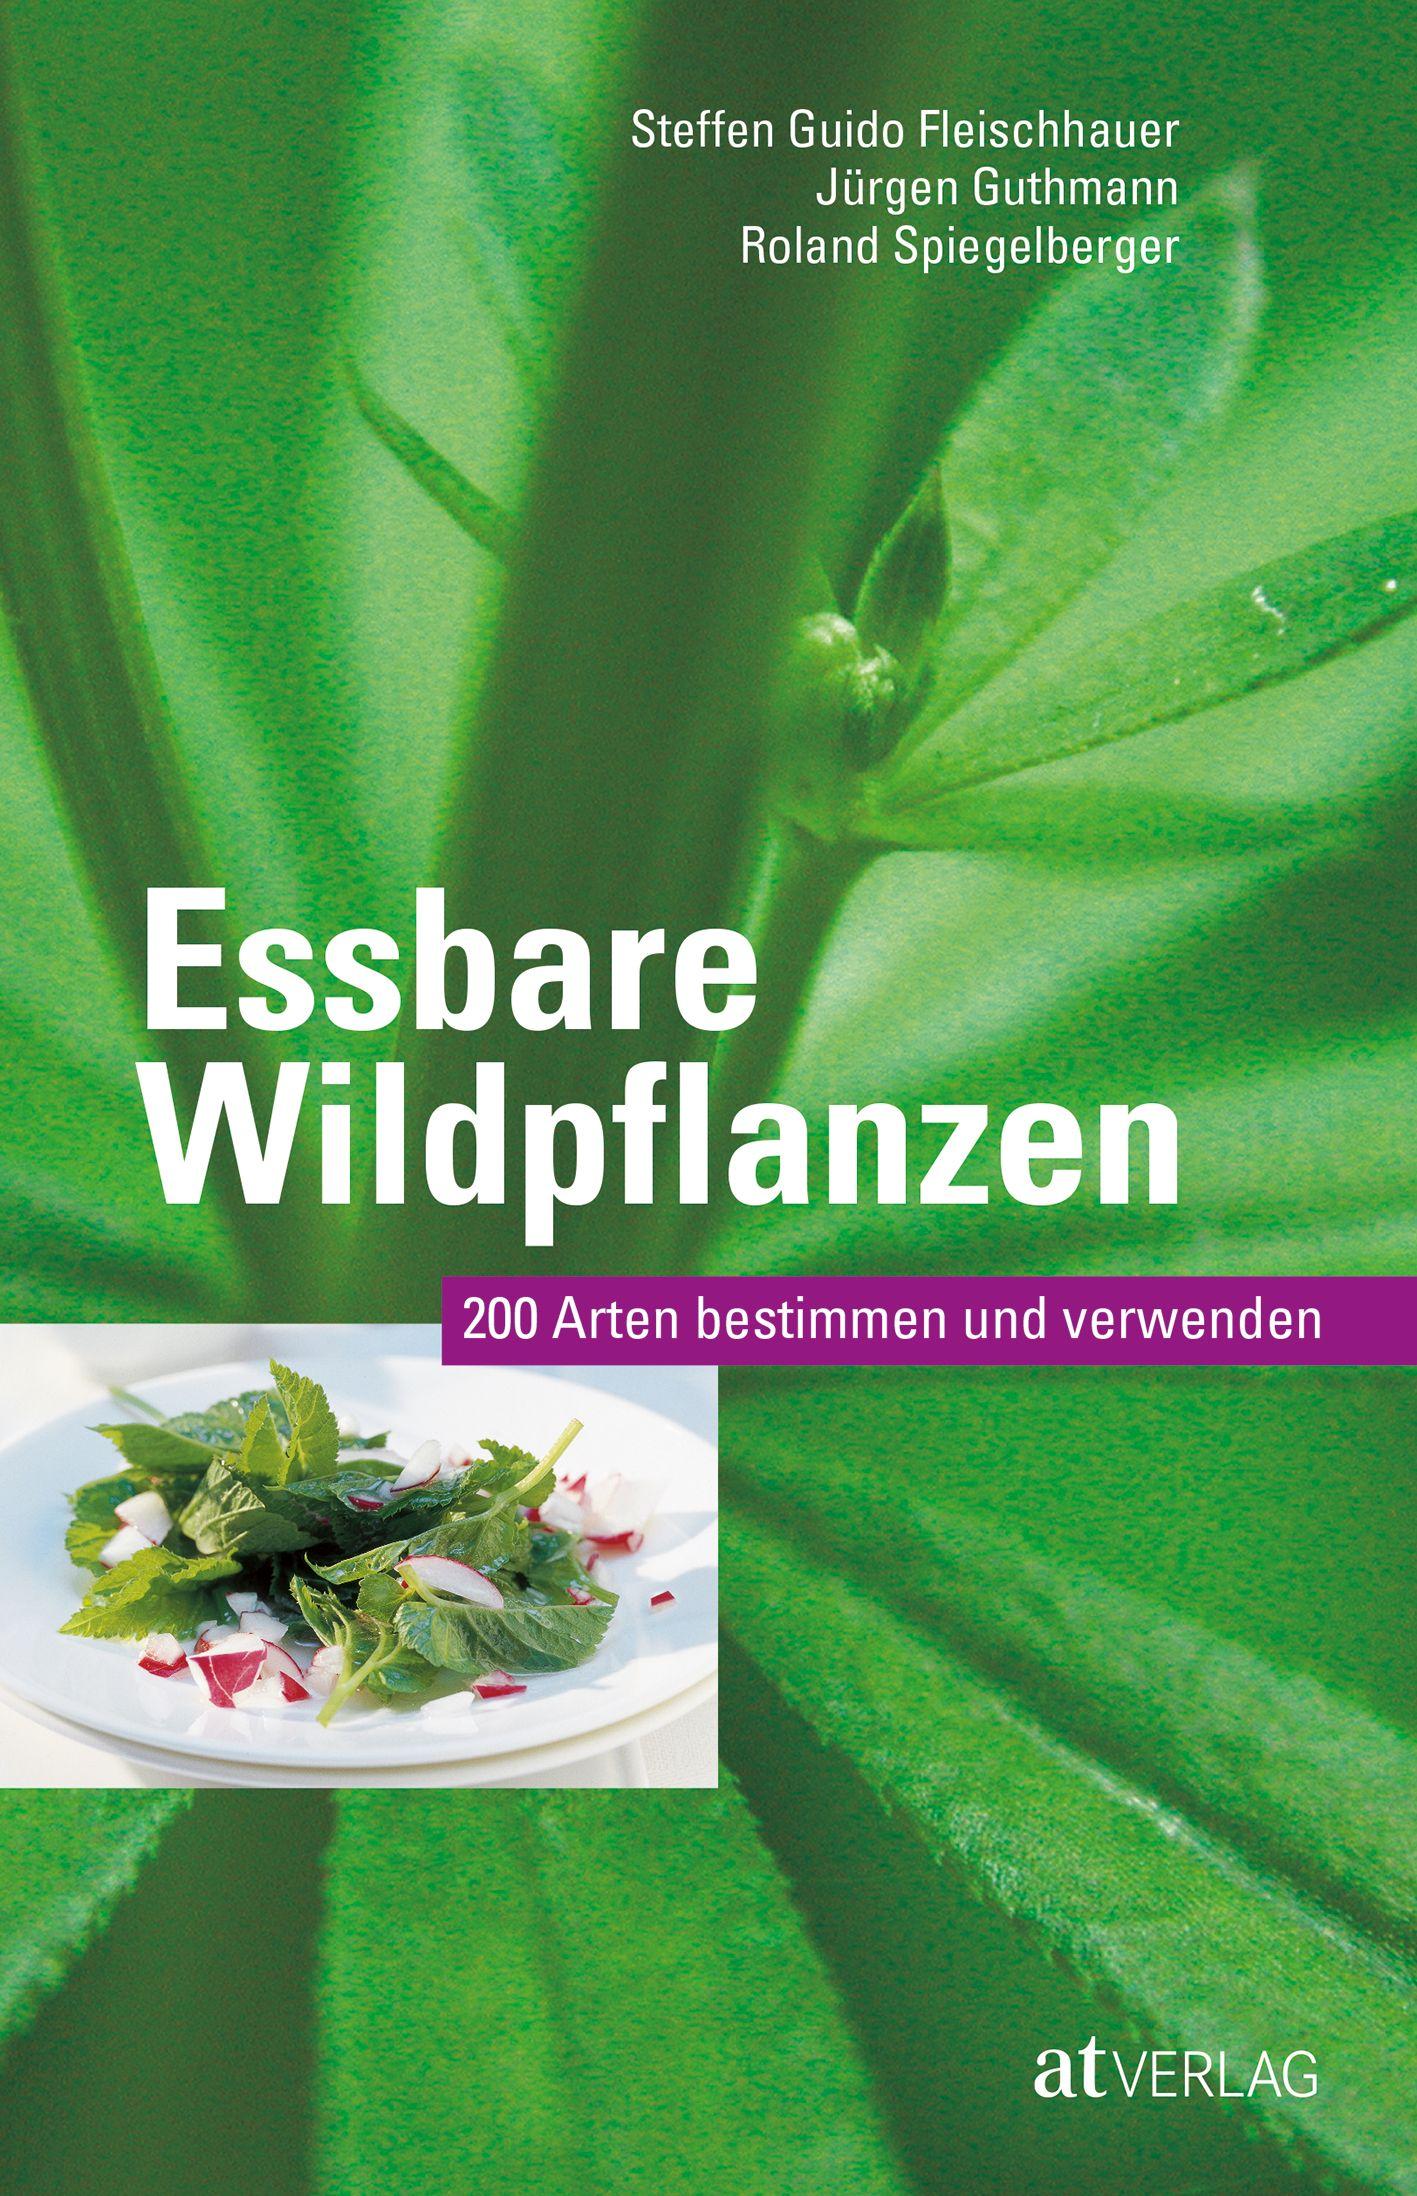 Essbare Wildpflanzen 200 Arten bestimmen und verwenden. Auch als App